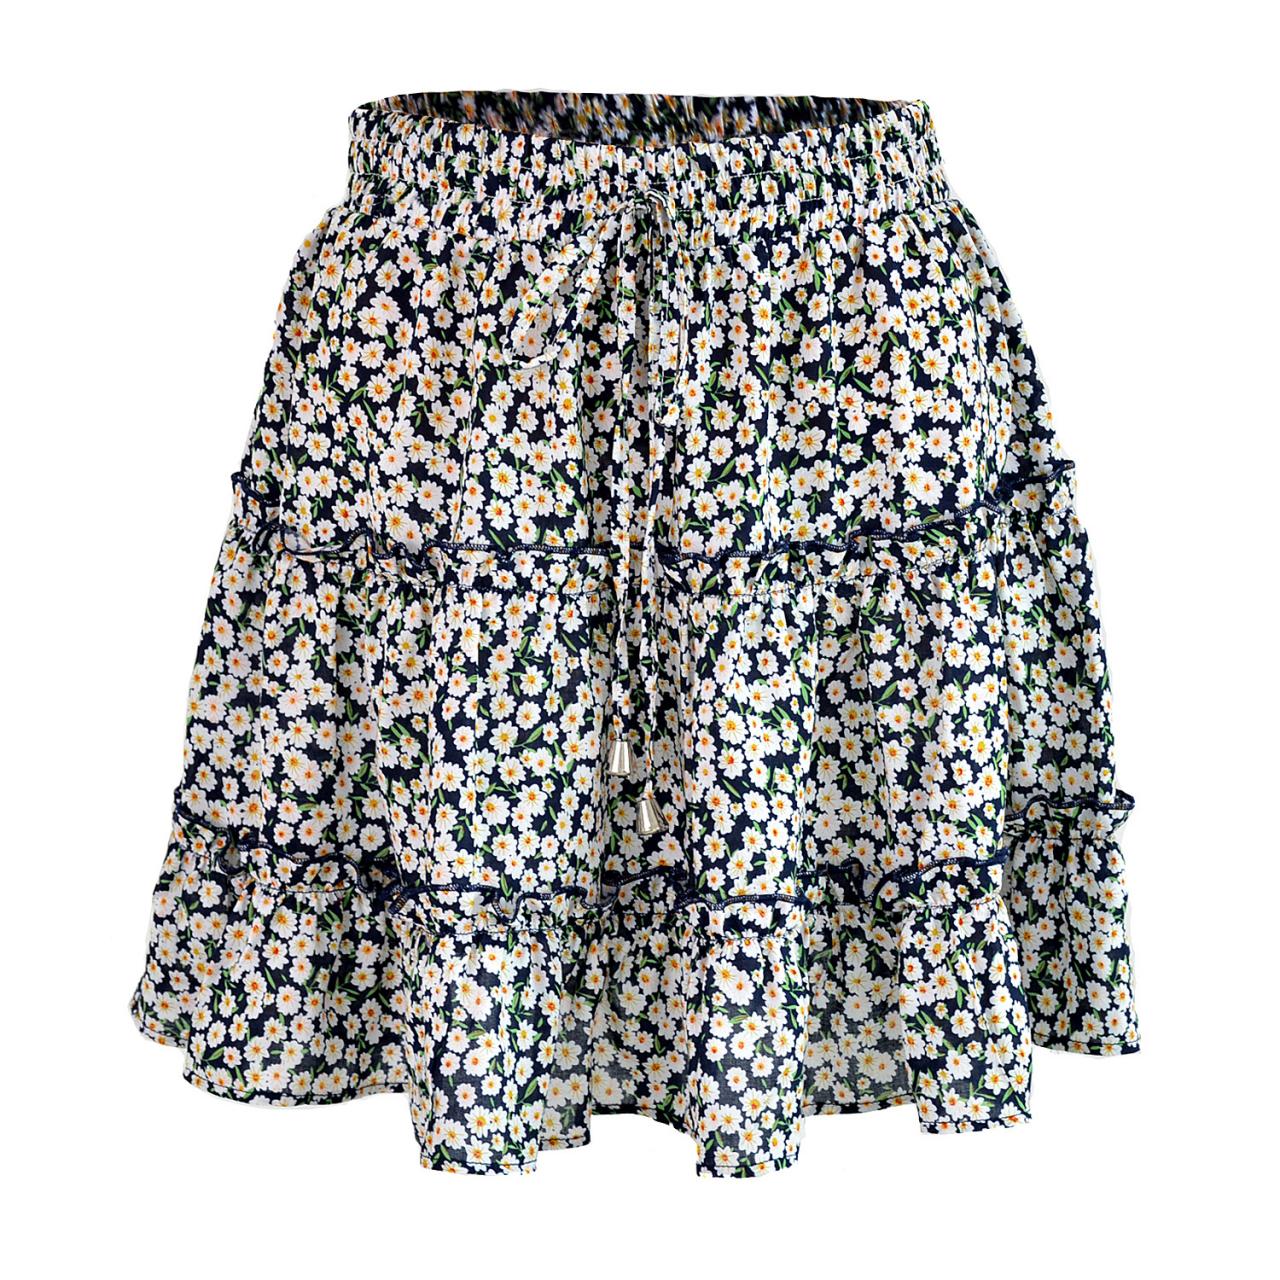 Women Mini Skirt High Waist Ruffles Casual Summer Beach Boho Floral Printed Short A-Line Skirt navy blue floral